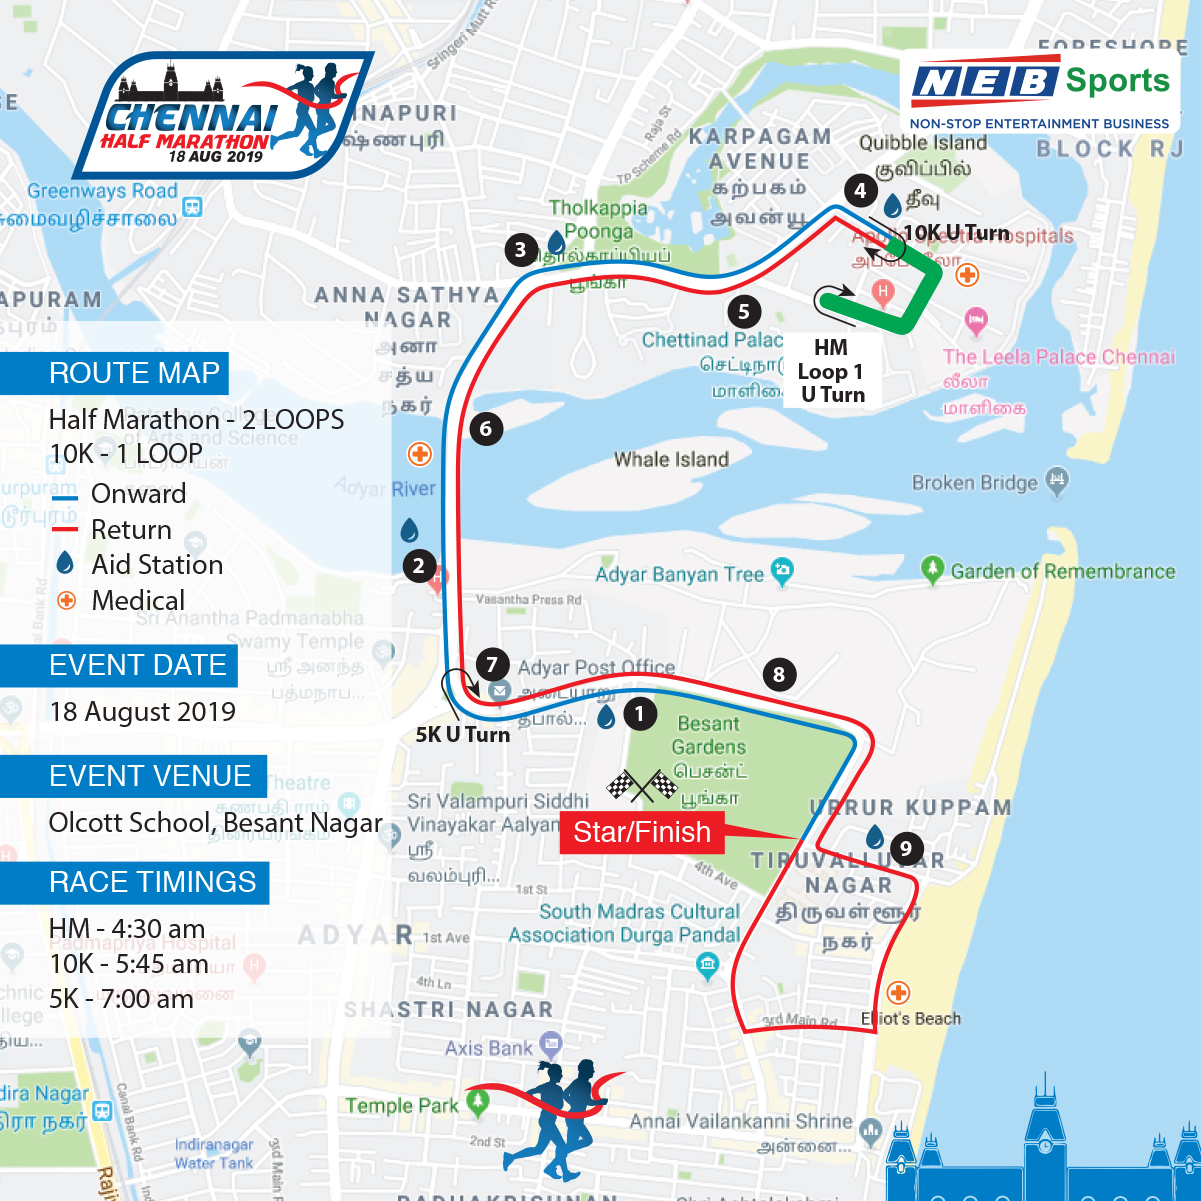 Chennai Half Marathon 2024